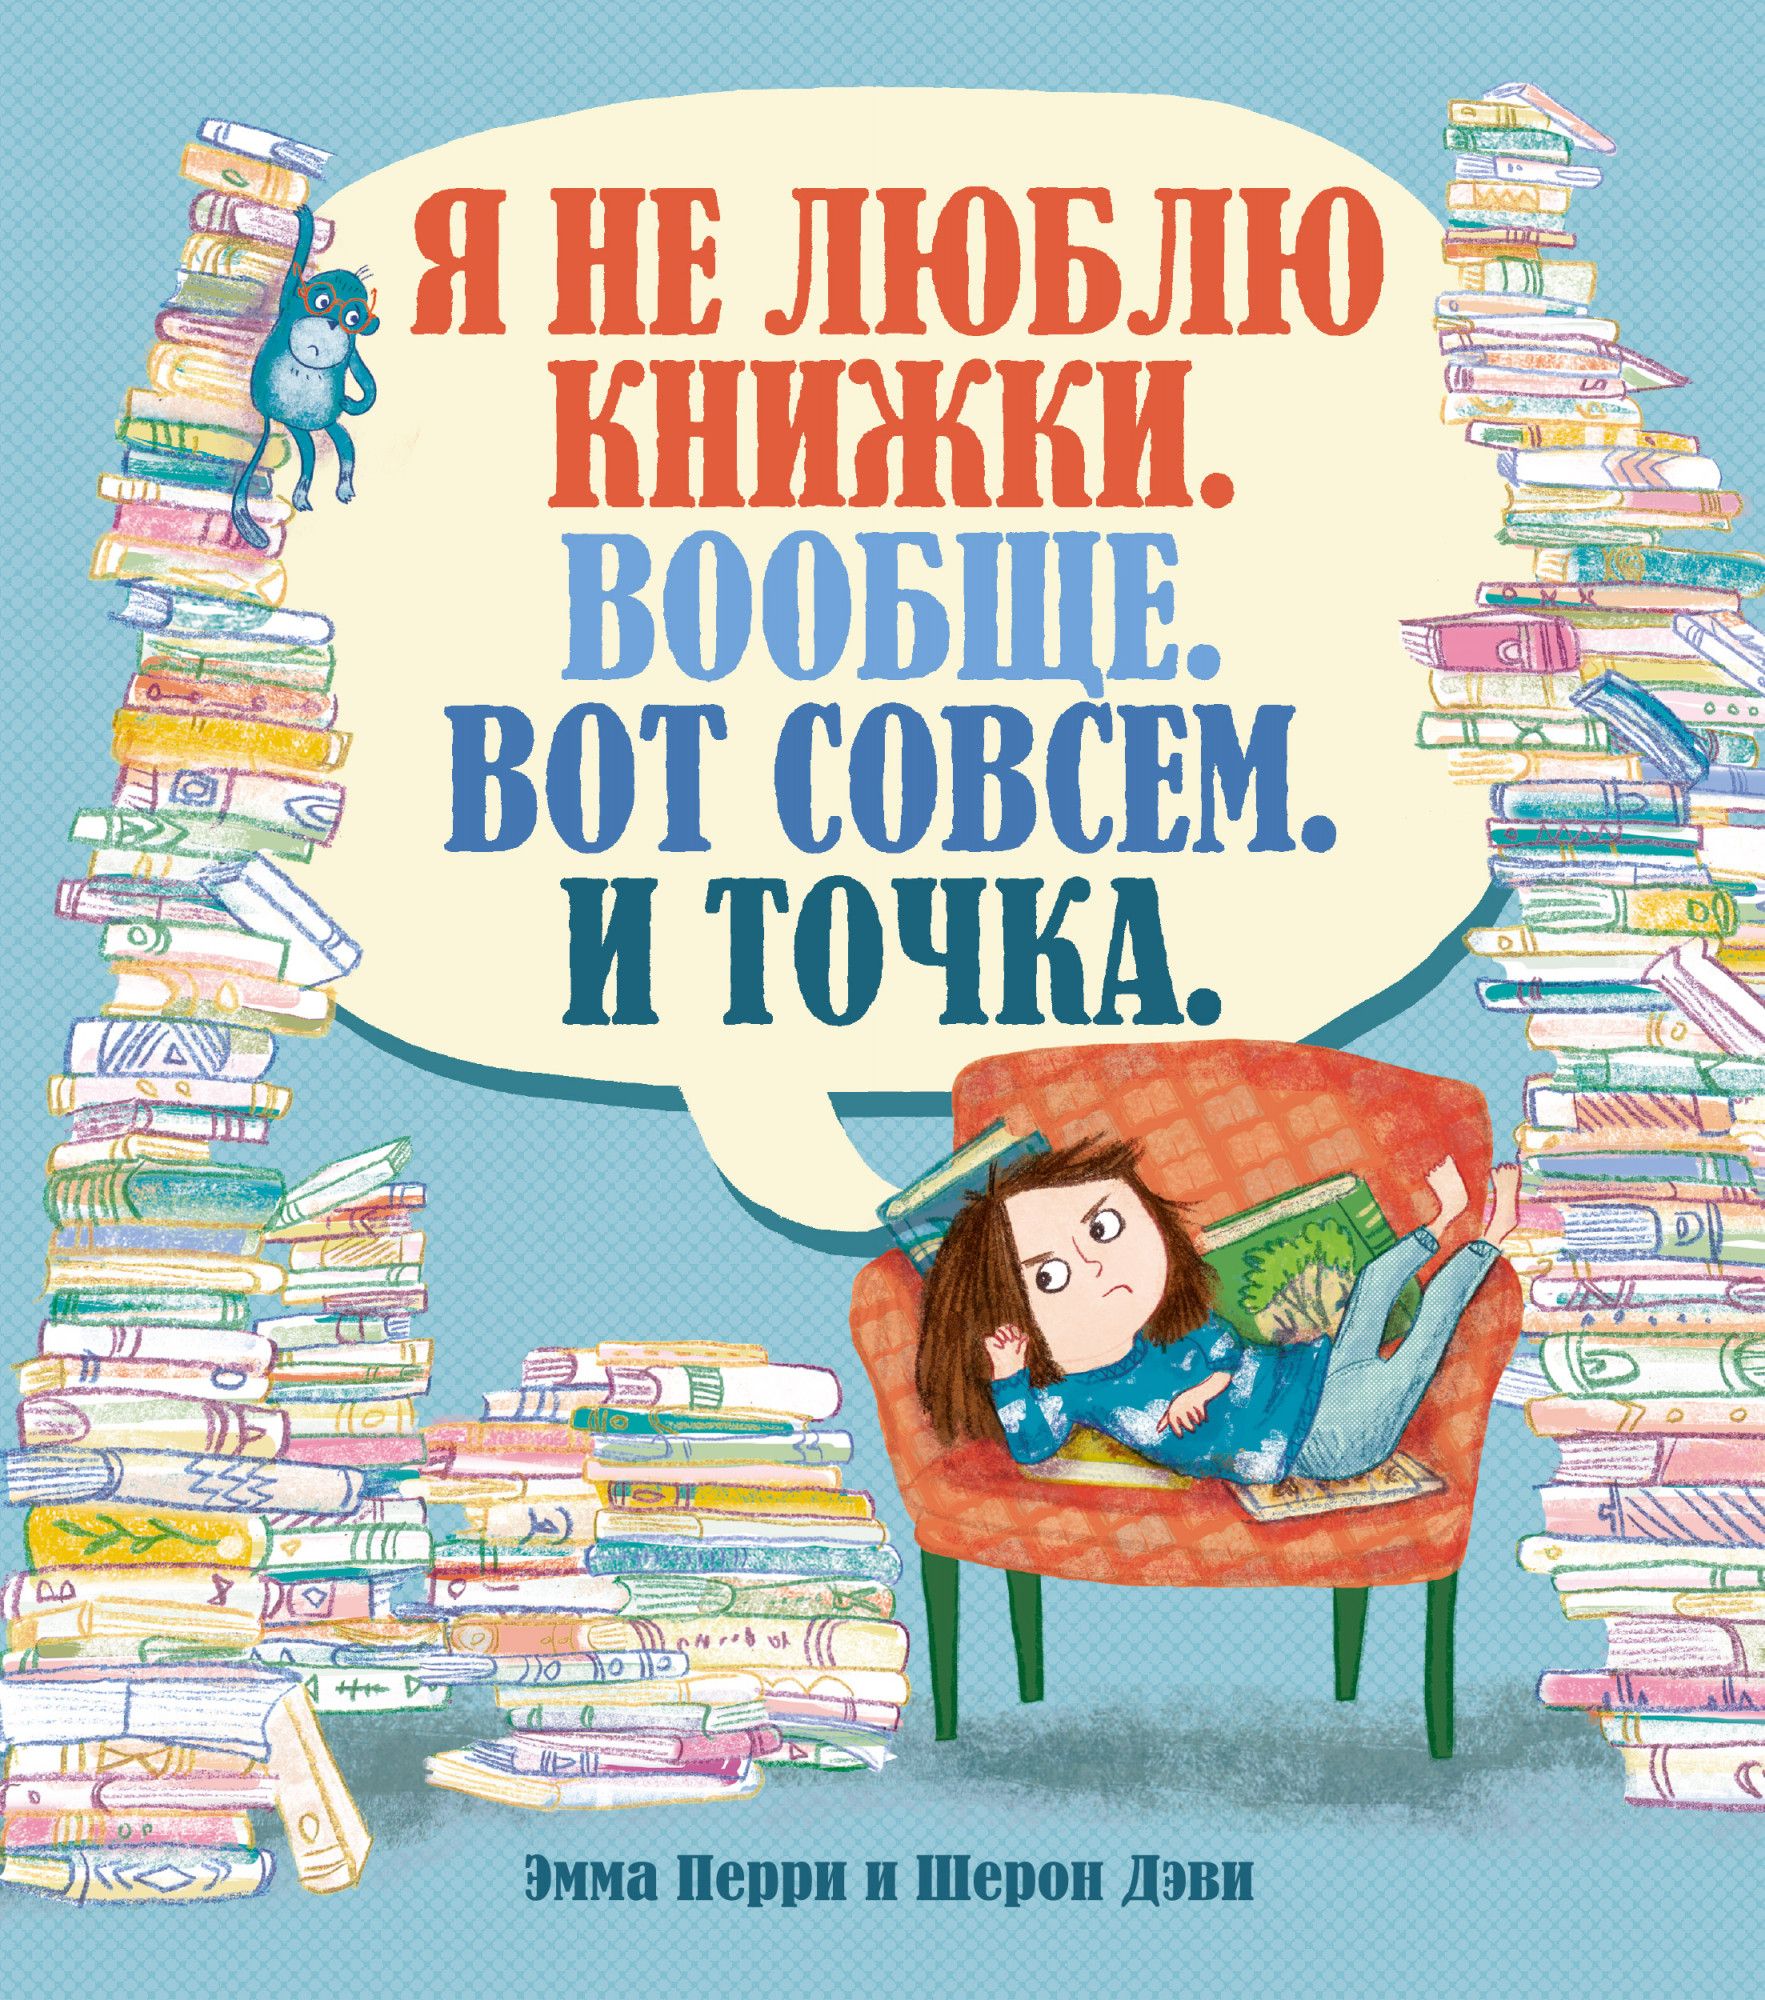 Книги обожаю. Я люблю книги. Я люблю читать книги. Я не люблю книги. Я не люблю книжки вообще вот совсем и точка.